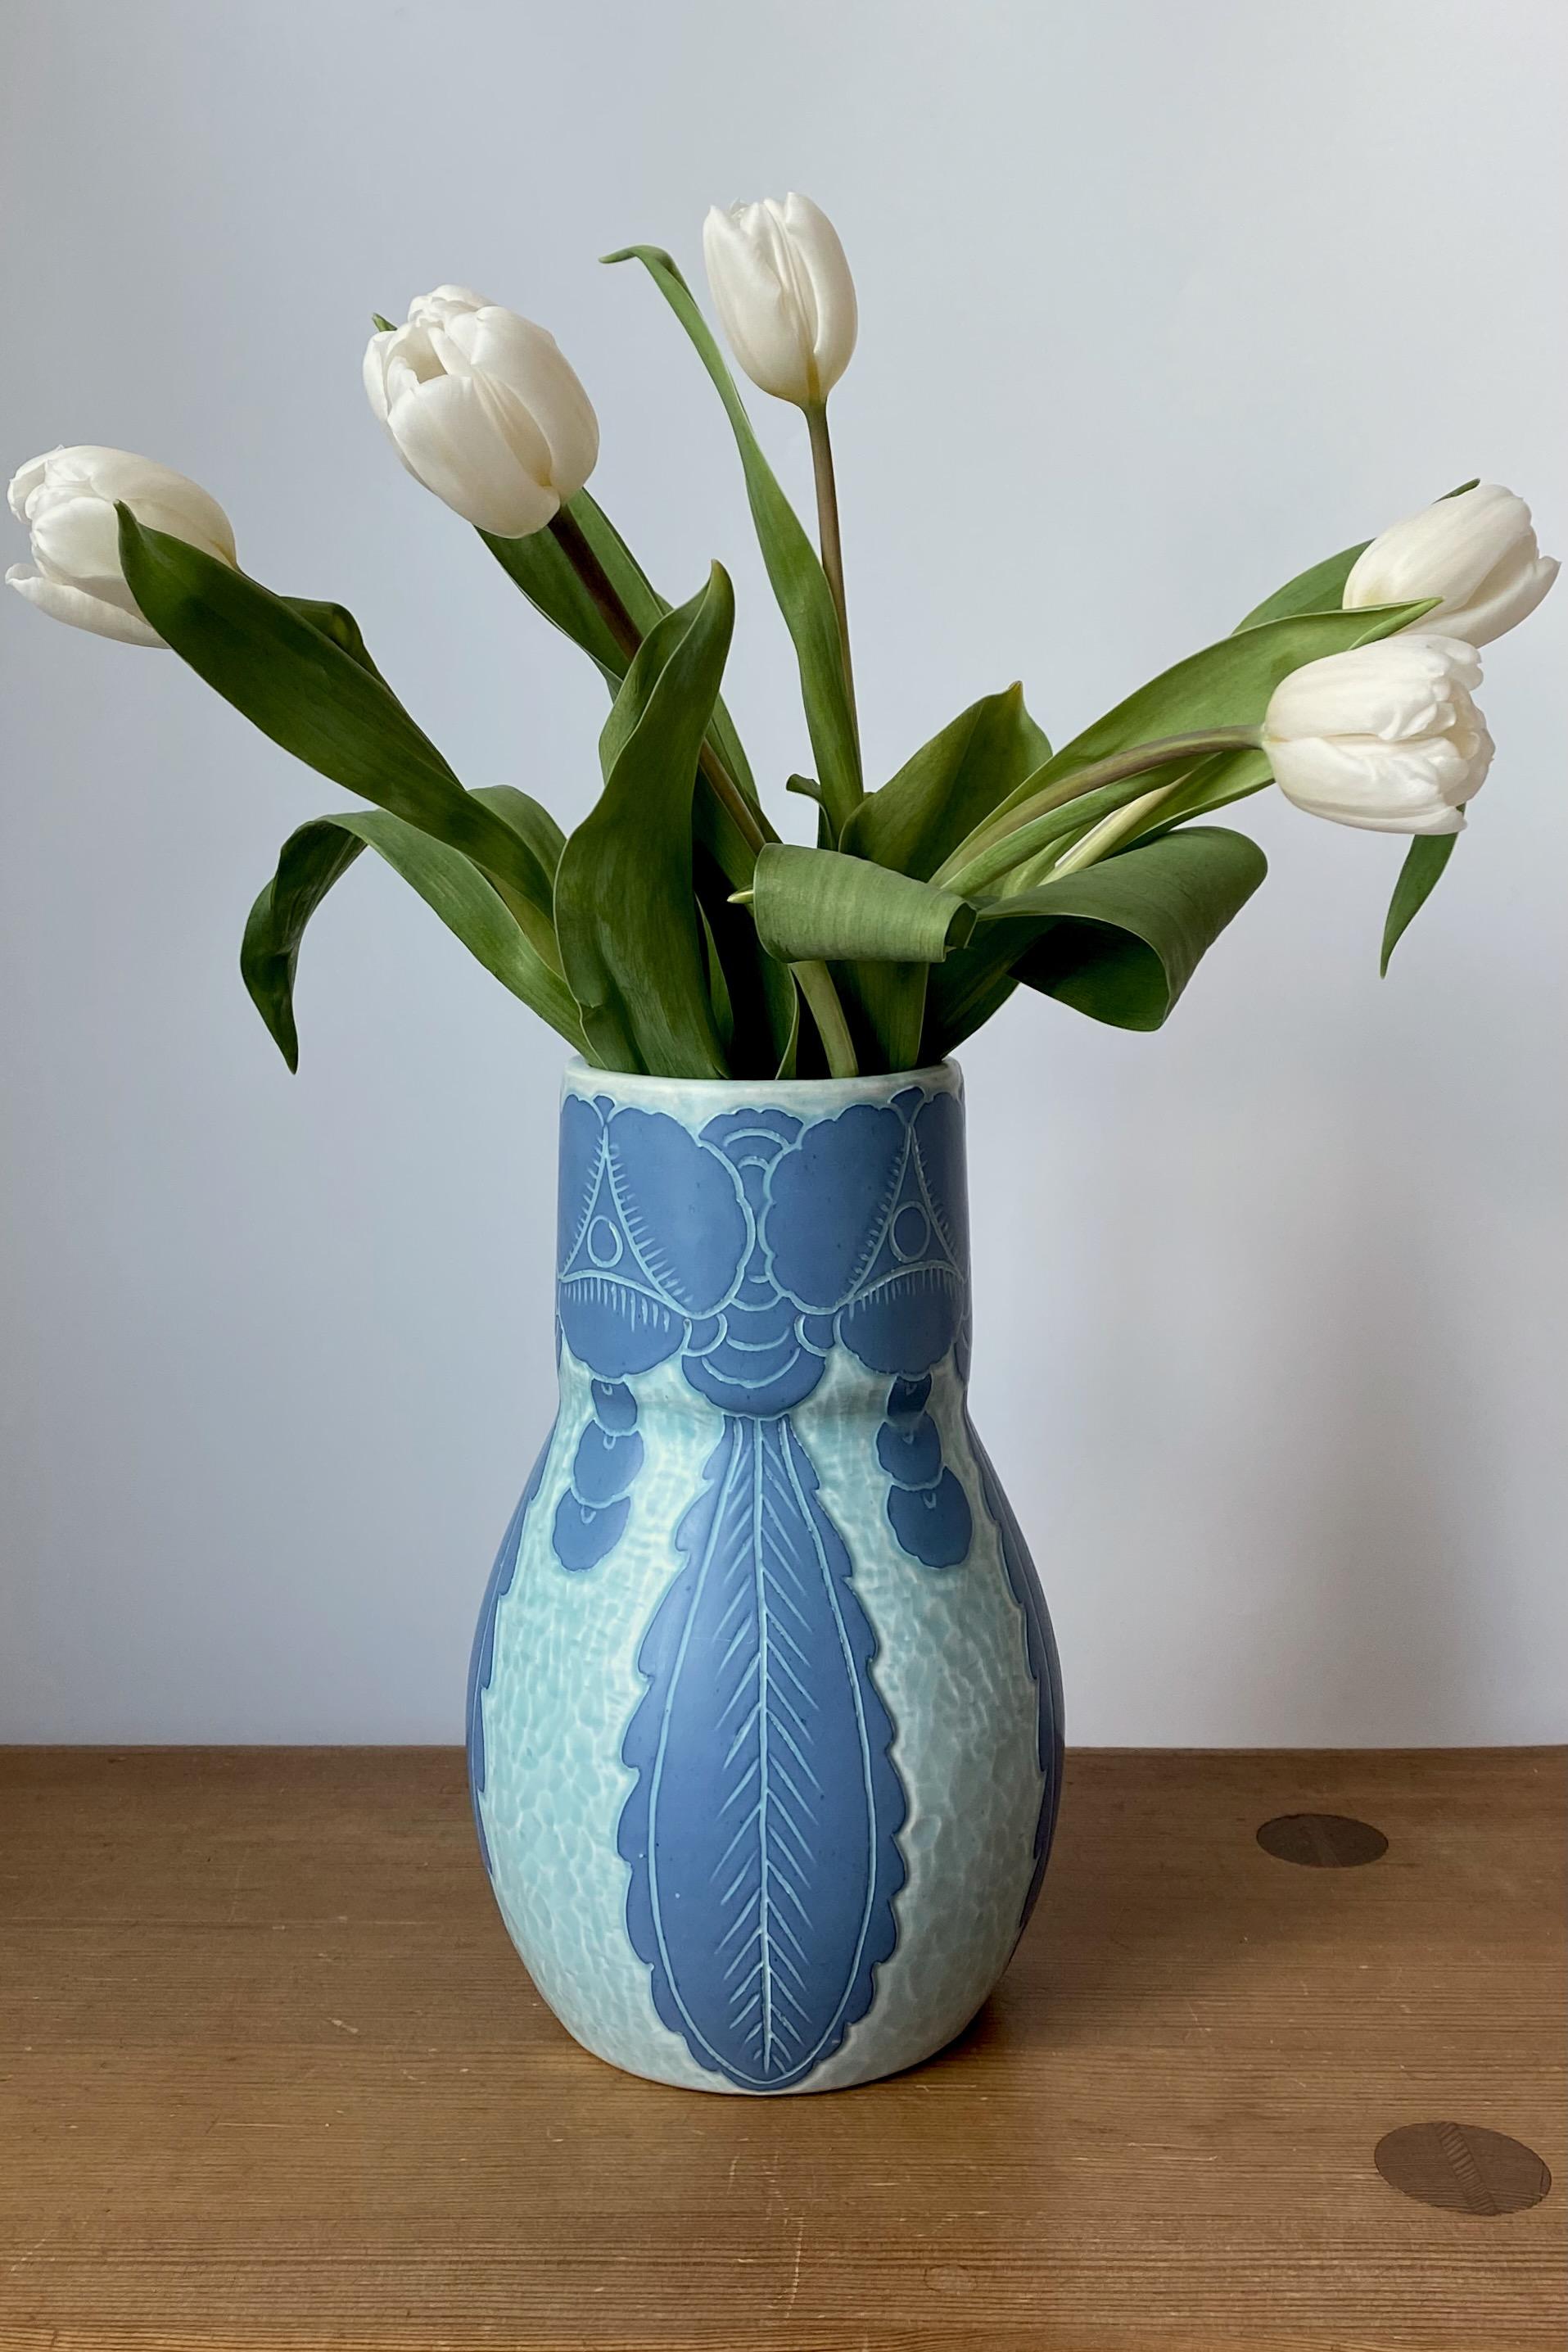 Superbe vase Sgraffito de 1922 par Josef Ekberg pour Gustavsberg, Suède. Un motif de fleurs dans le style suédois Jugend (ou Art nouveau) décore le vase dans des tons bleus. Josef Ekberg était un artiste céramiste suédois qui a travaillé à